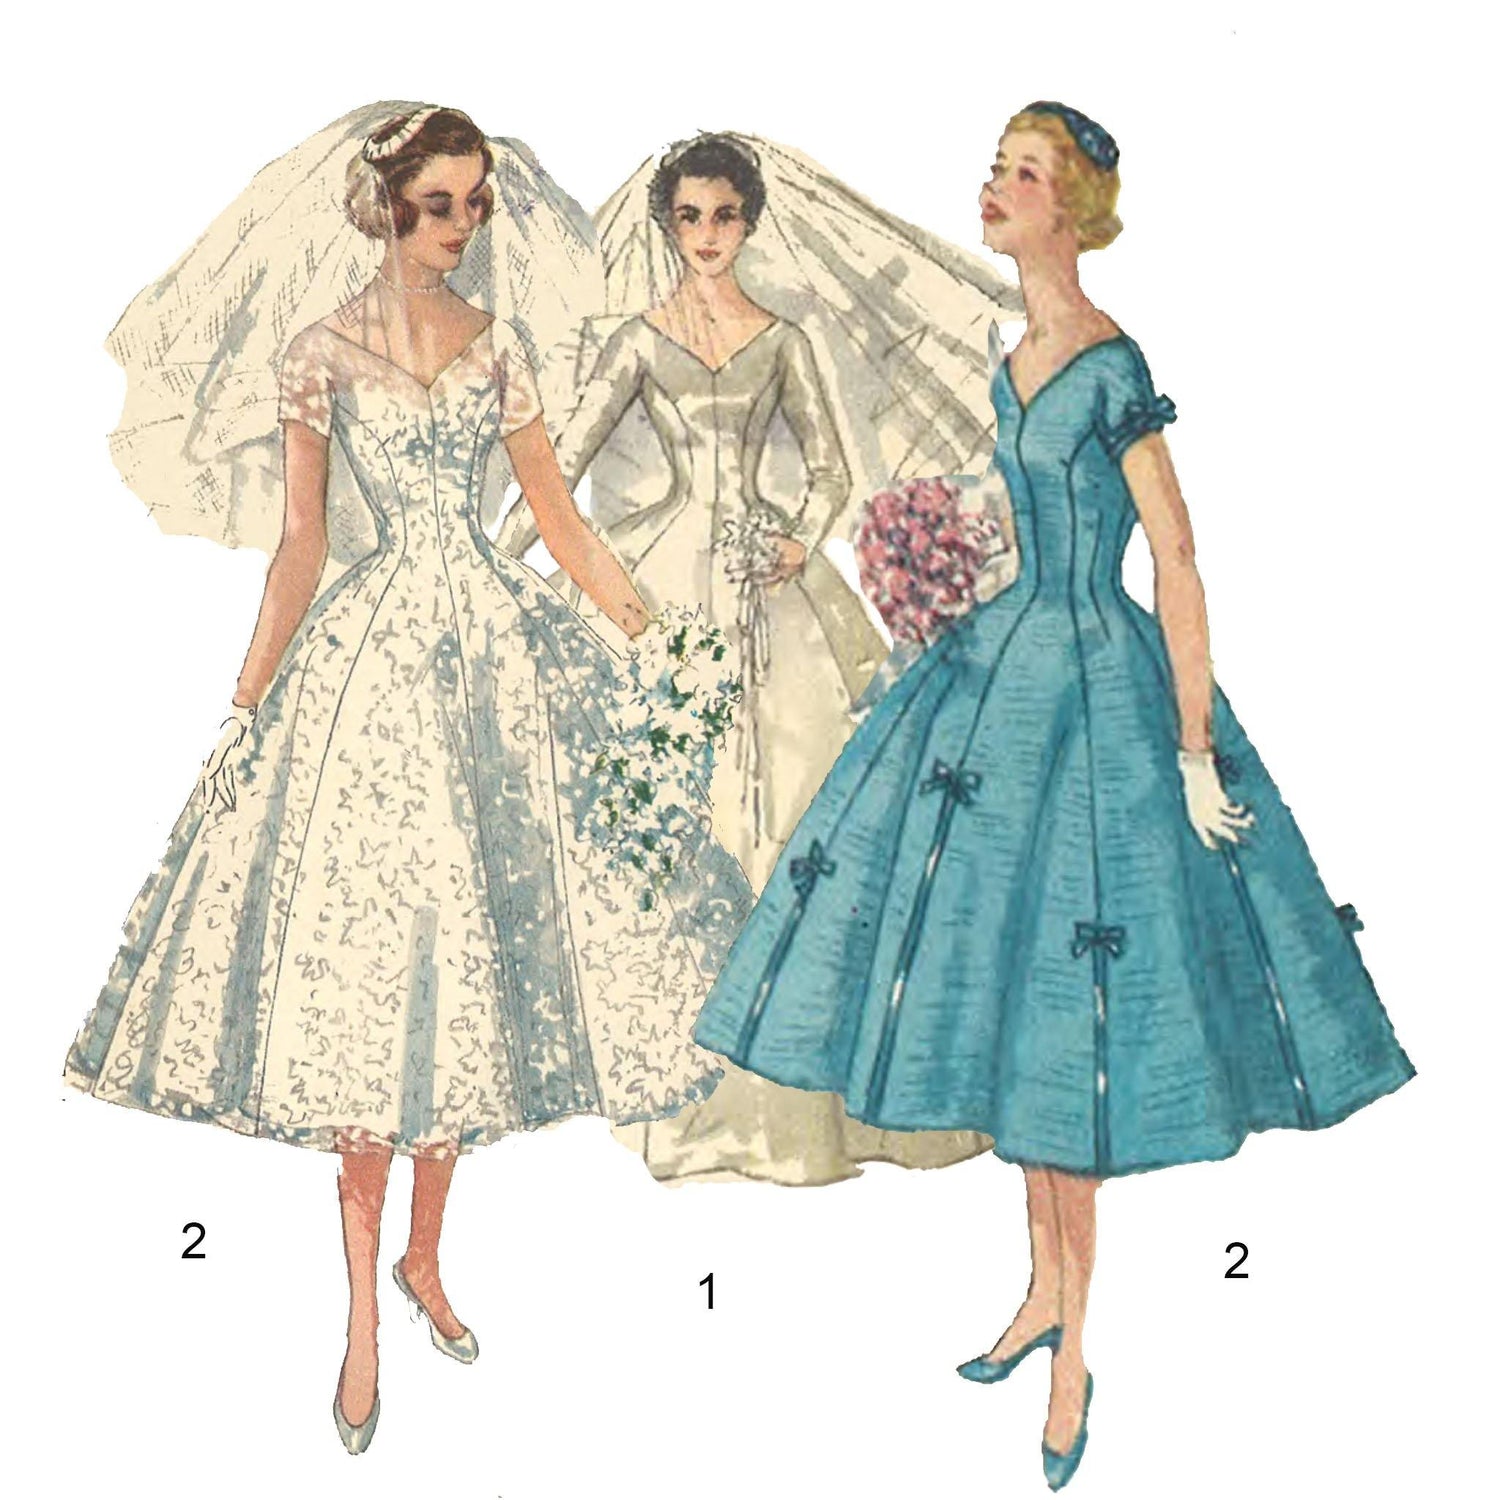 Vintage Evening Dress, Formal Dress & Cocktail Dresses Sewing Patterns